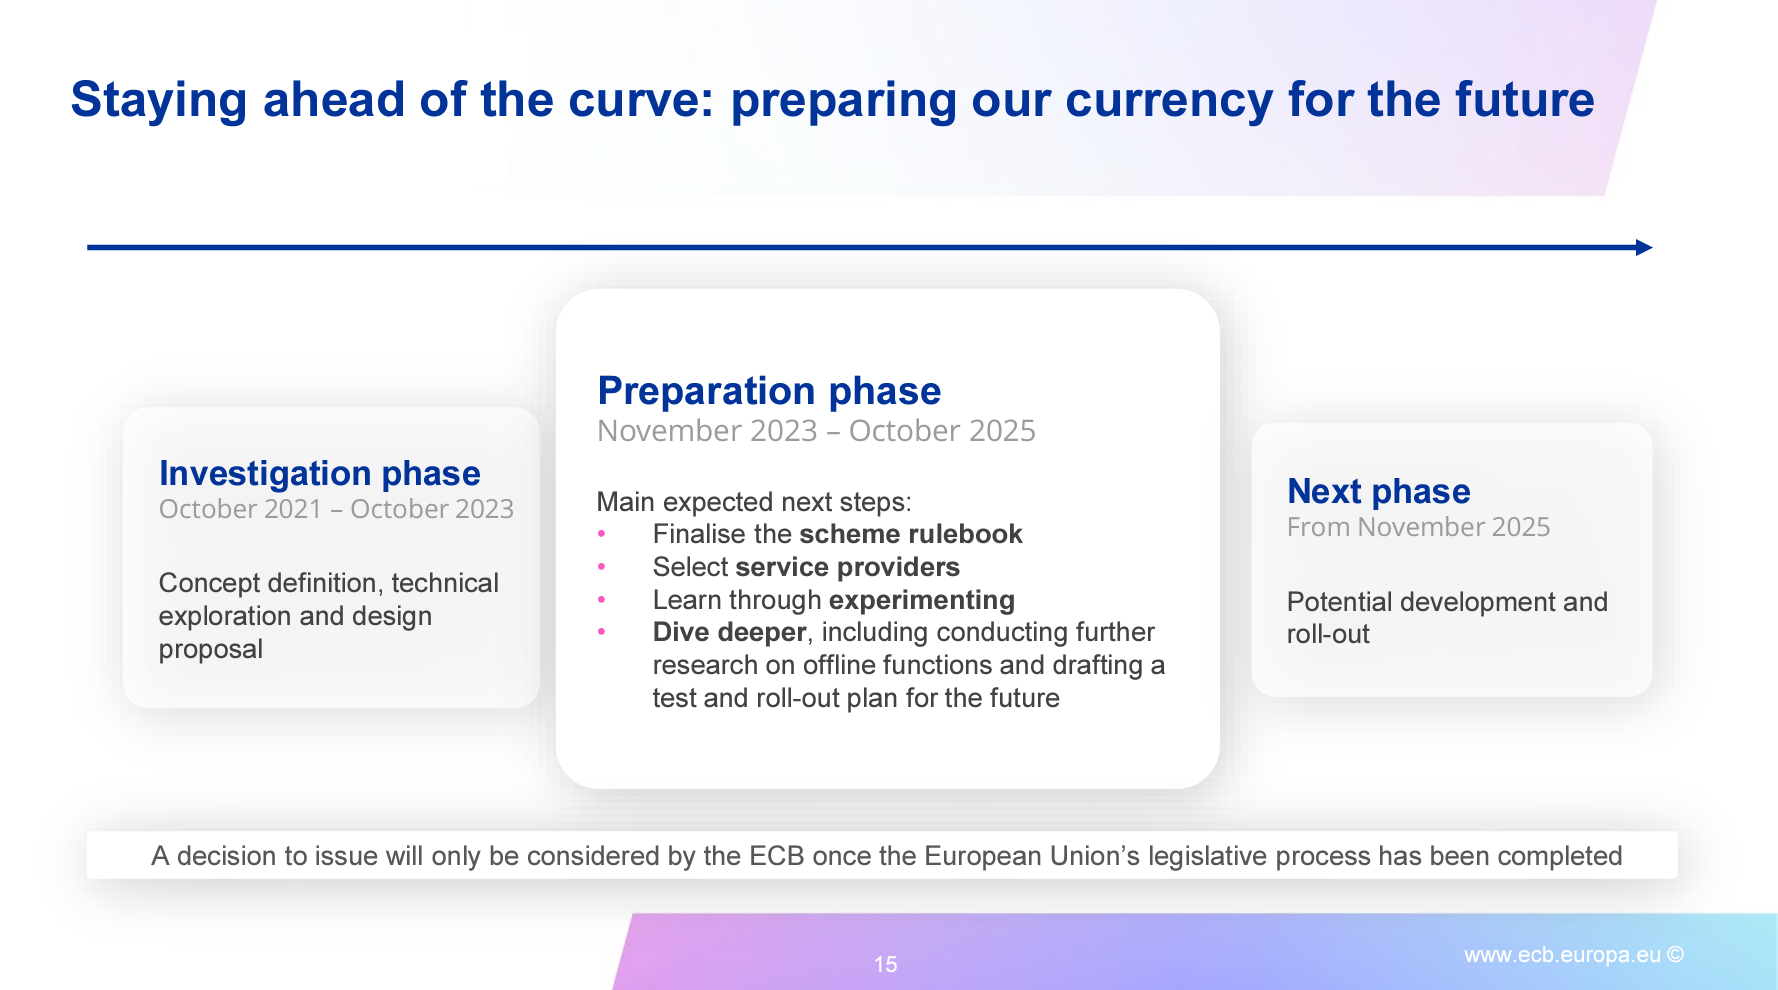 ECB execs plan to launch digital euro CBDC in November 2025 - Trade News - 4